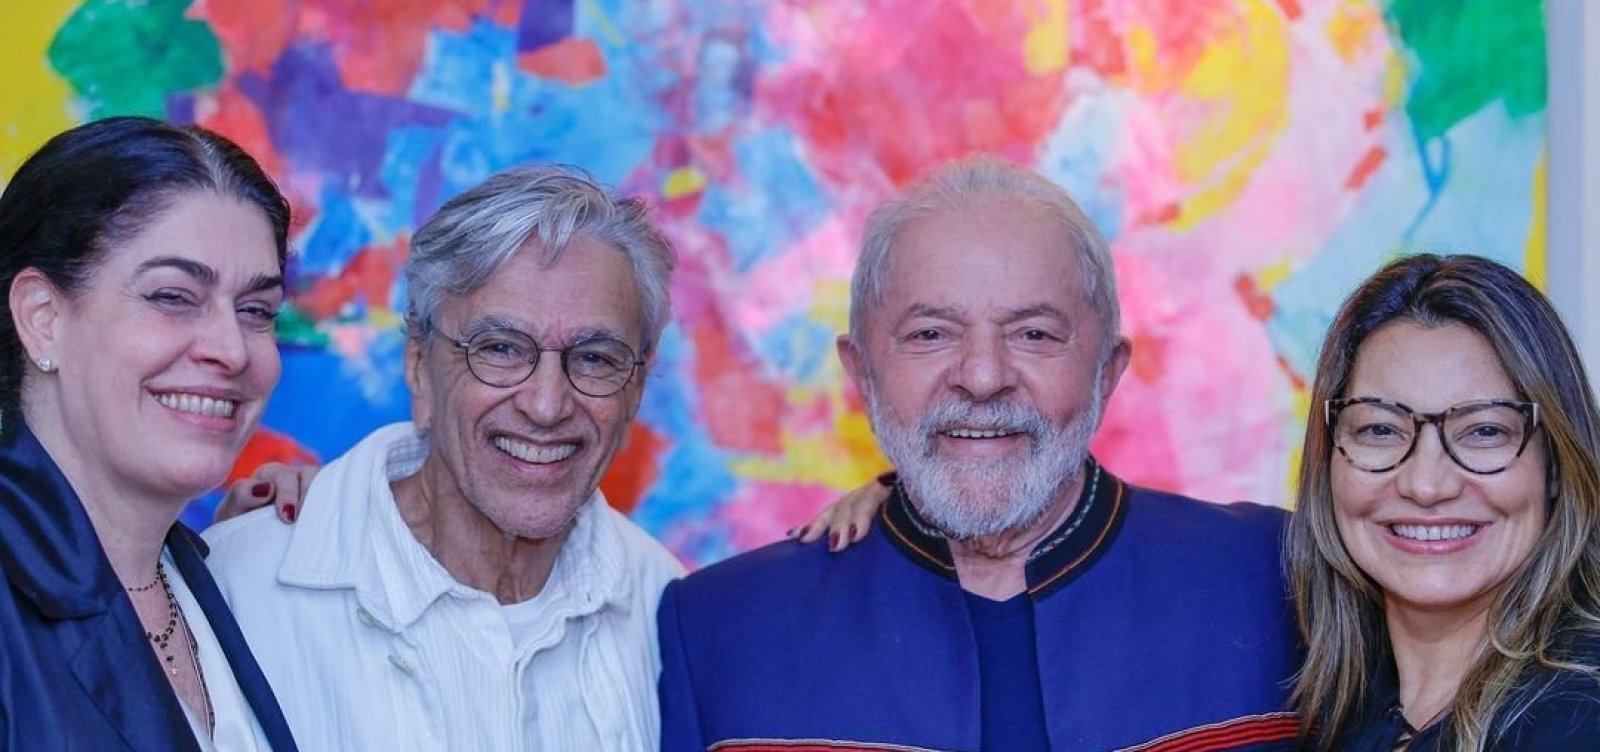 Entusiasta de Ciro, Caetano Veloso se reúne com Lula e sinaliza apoio a ex-presidente